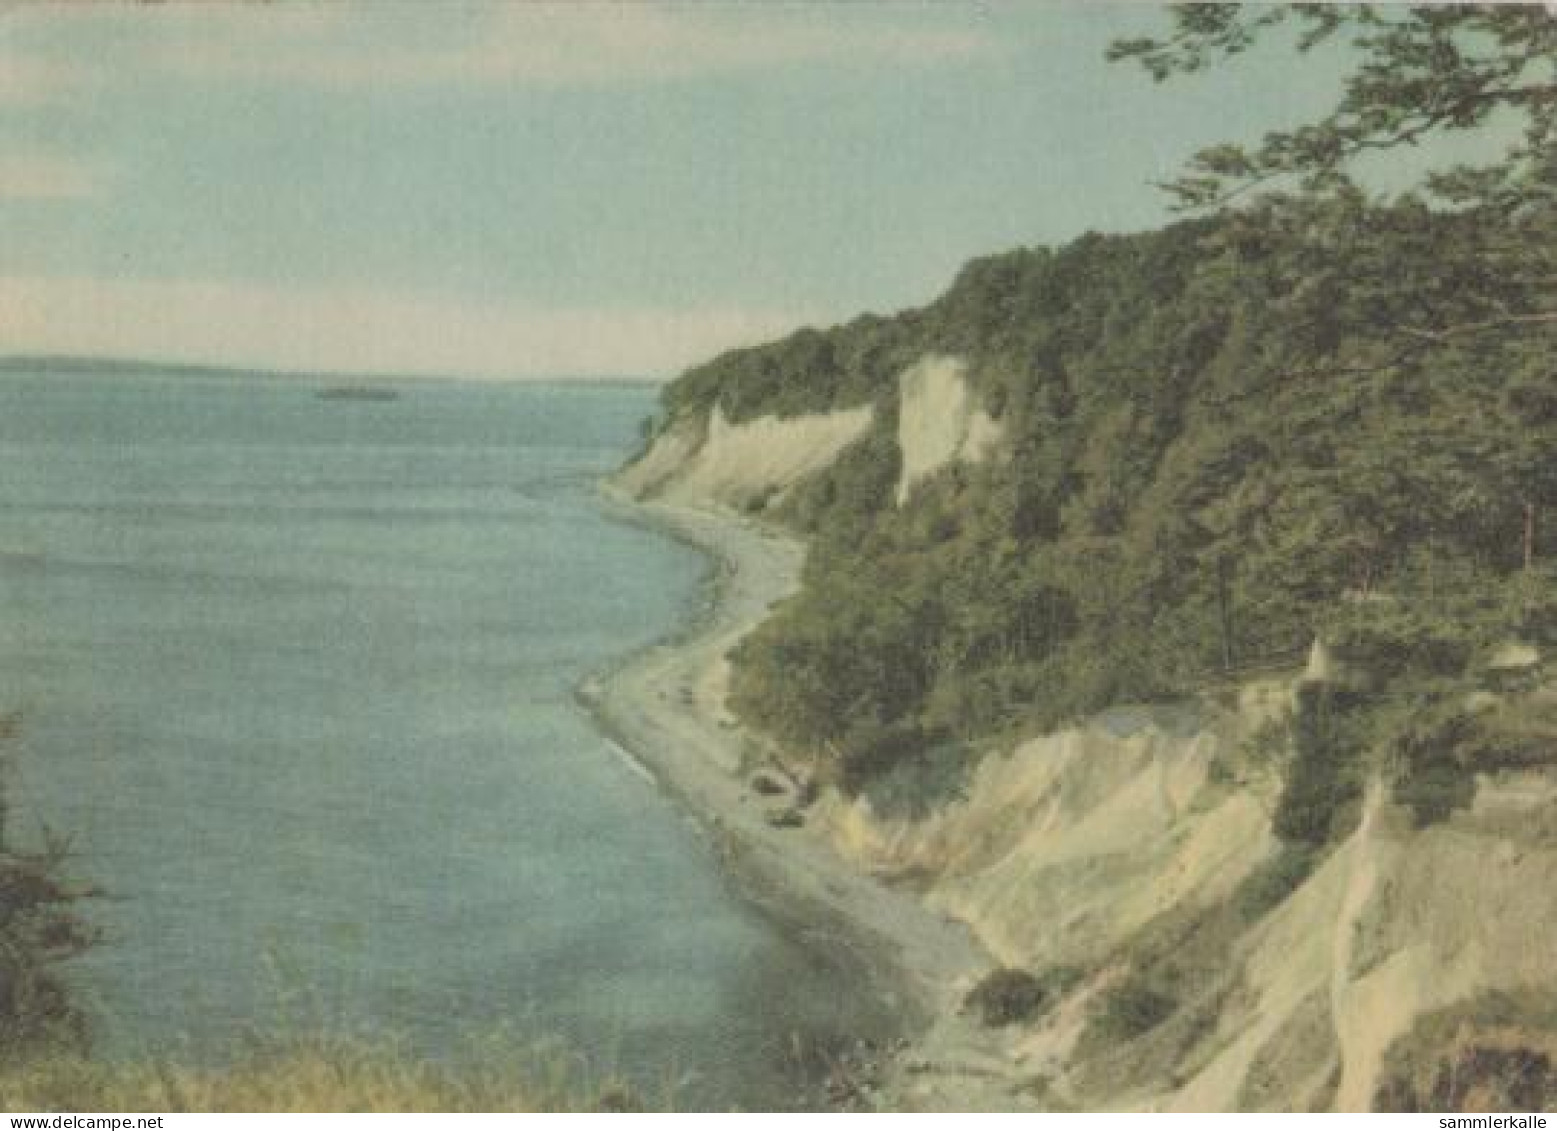 19109 - Binz - Kreideküste Bei Sassnitz Auf Rügen - Ca. 1965 - Rügen